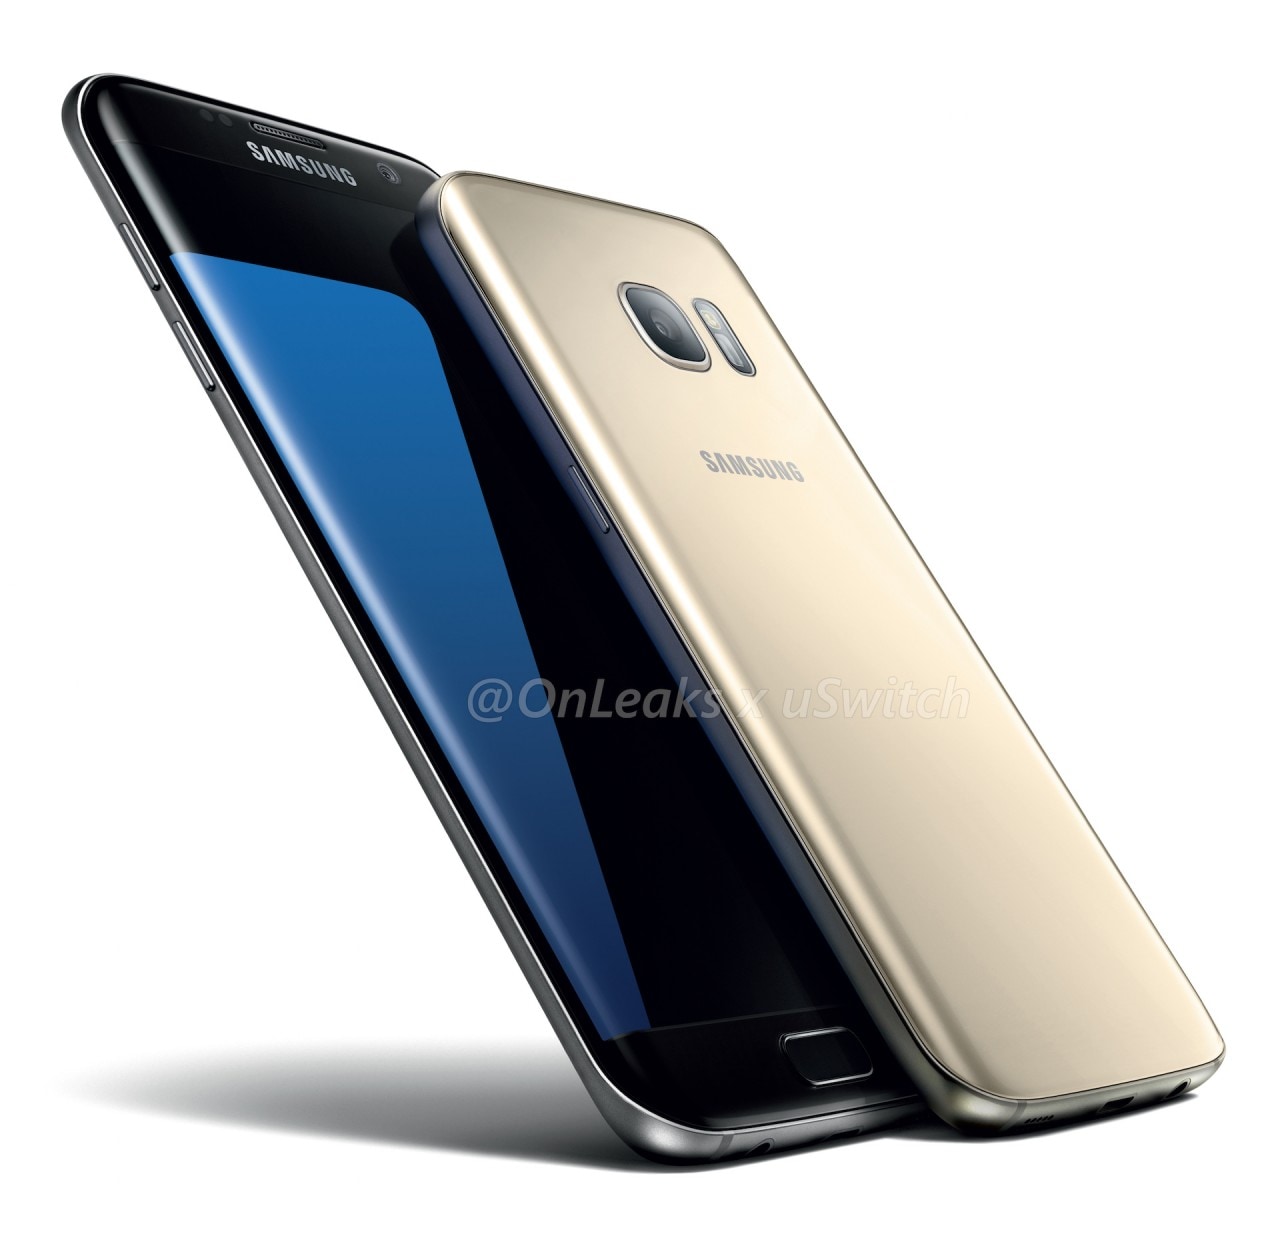 Galaxy S7 ed S7 edge: tanti render di tutti i colori e dettagli su fotocamera e dimensioni (foto)